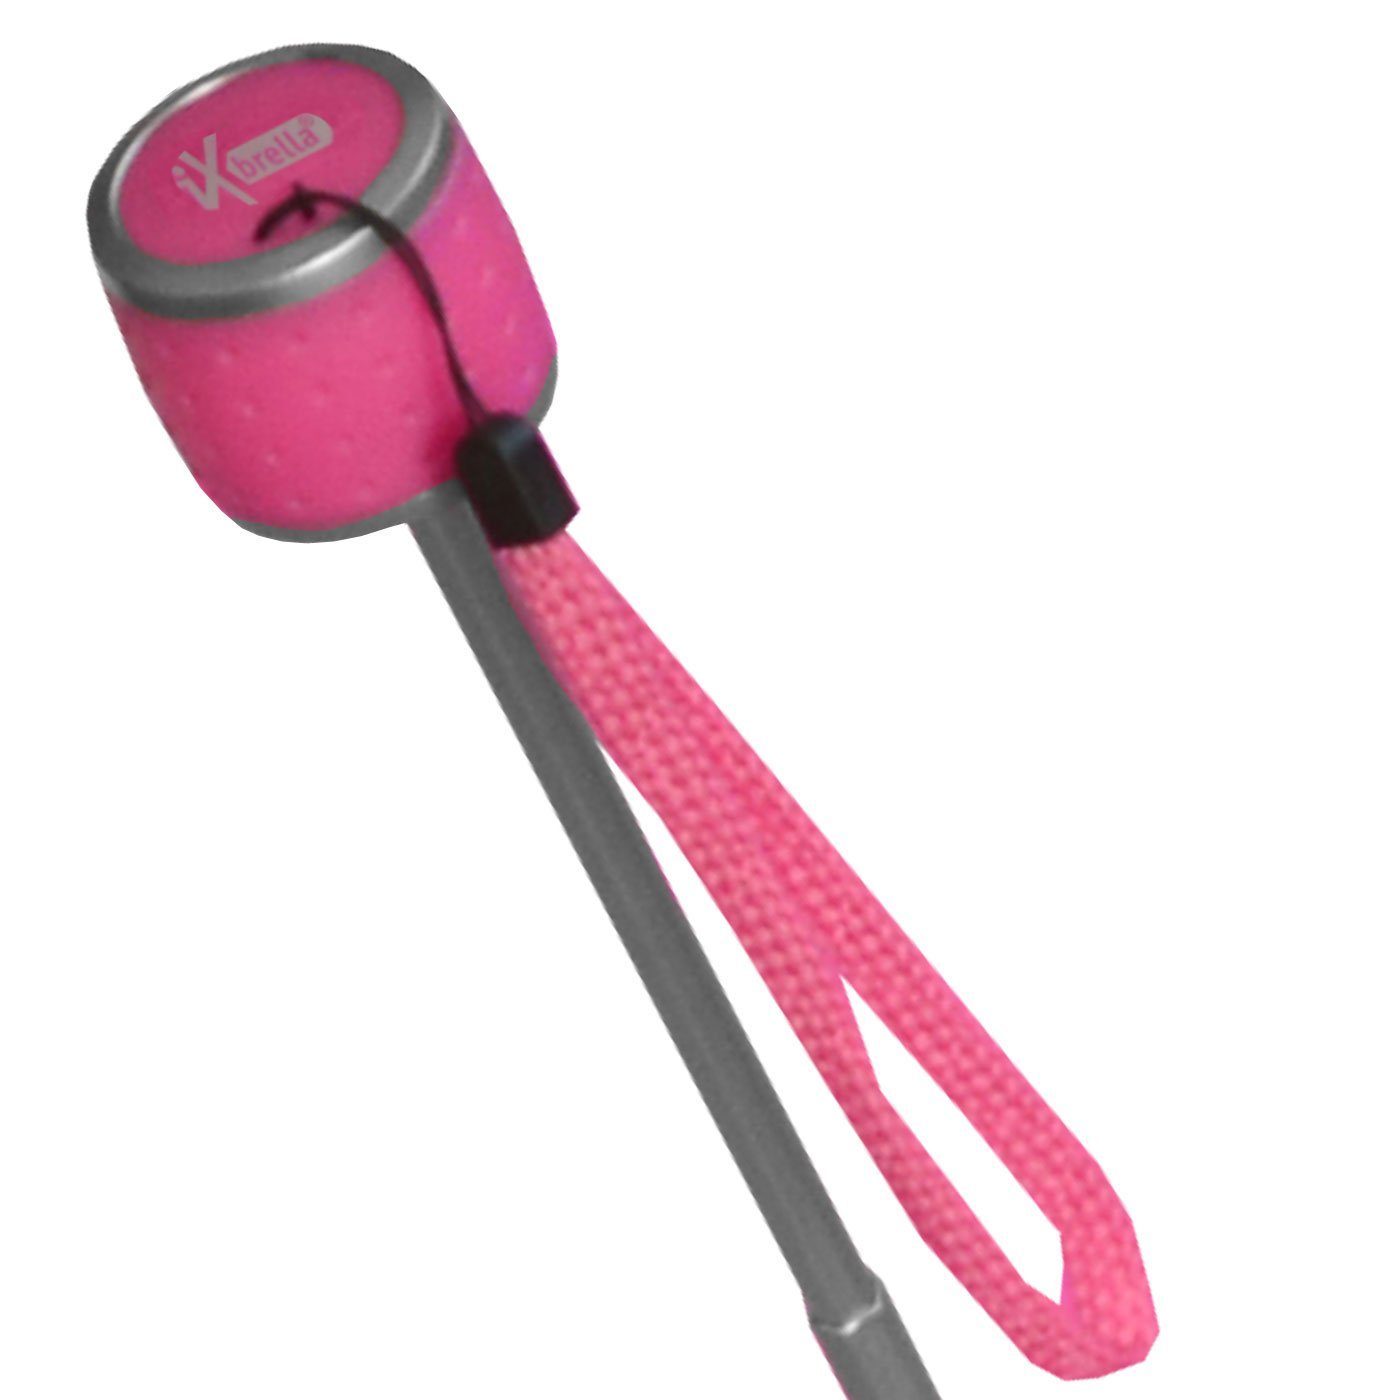 iX-brella Taschenregenschirm Mini extra Dach farbenfroh Ultra großem - neon-pink Light leicht, mit 